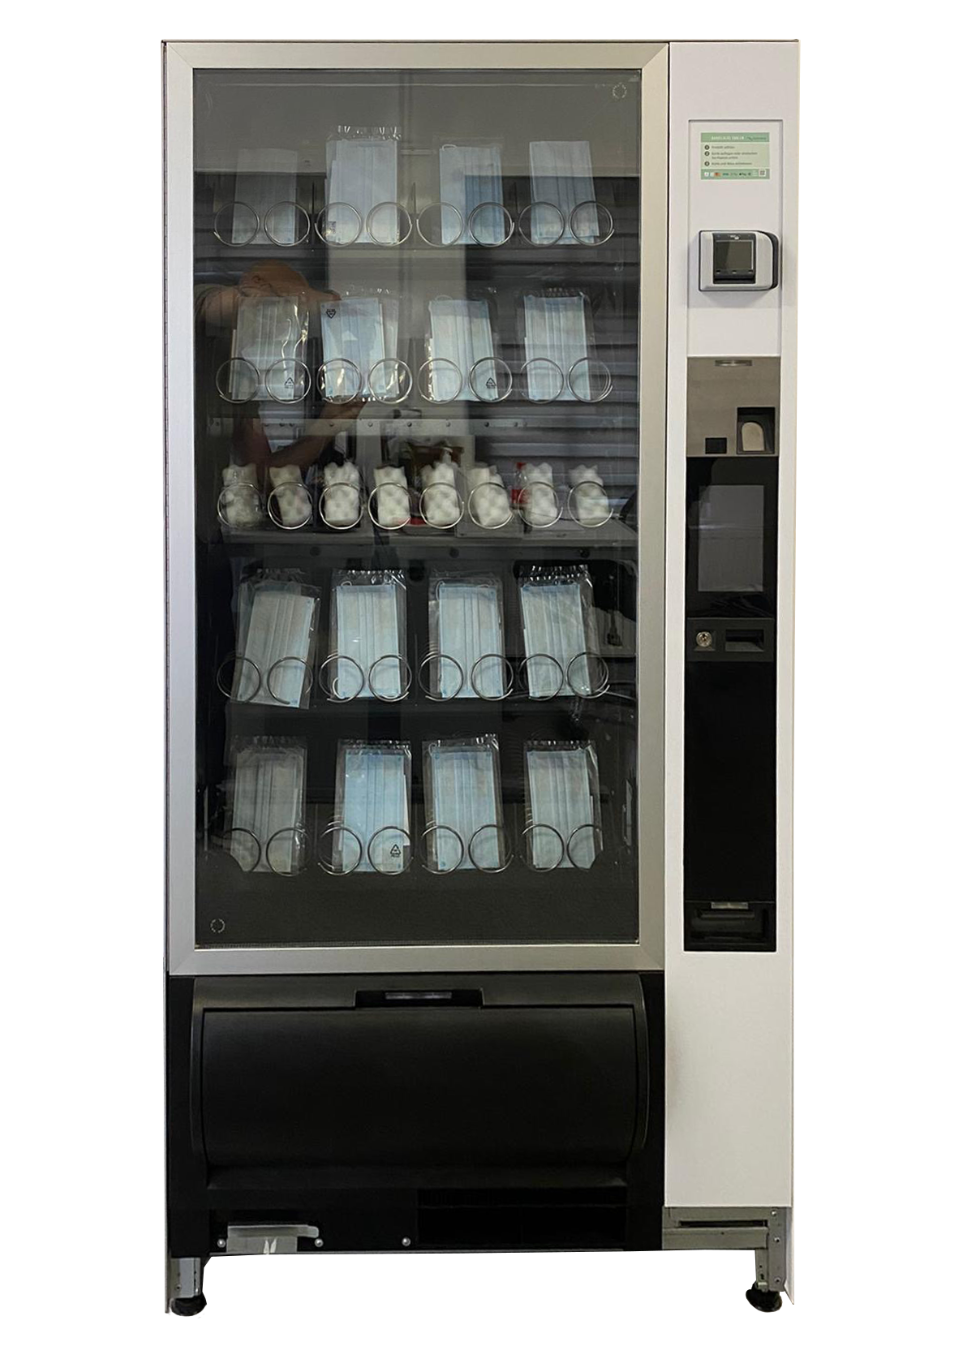 Corona Test Automaten: Flavura Automaten für Corona Schnelltest: Flavura Verkaufsautomaten und Warenautomaten für Corona Schnelltests aus dem Automaten